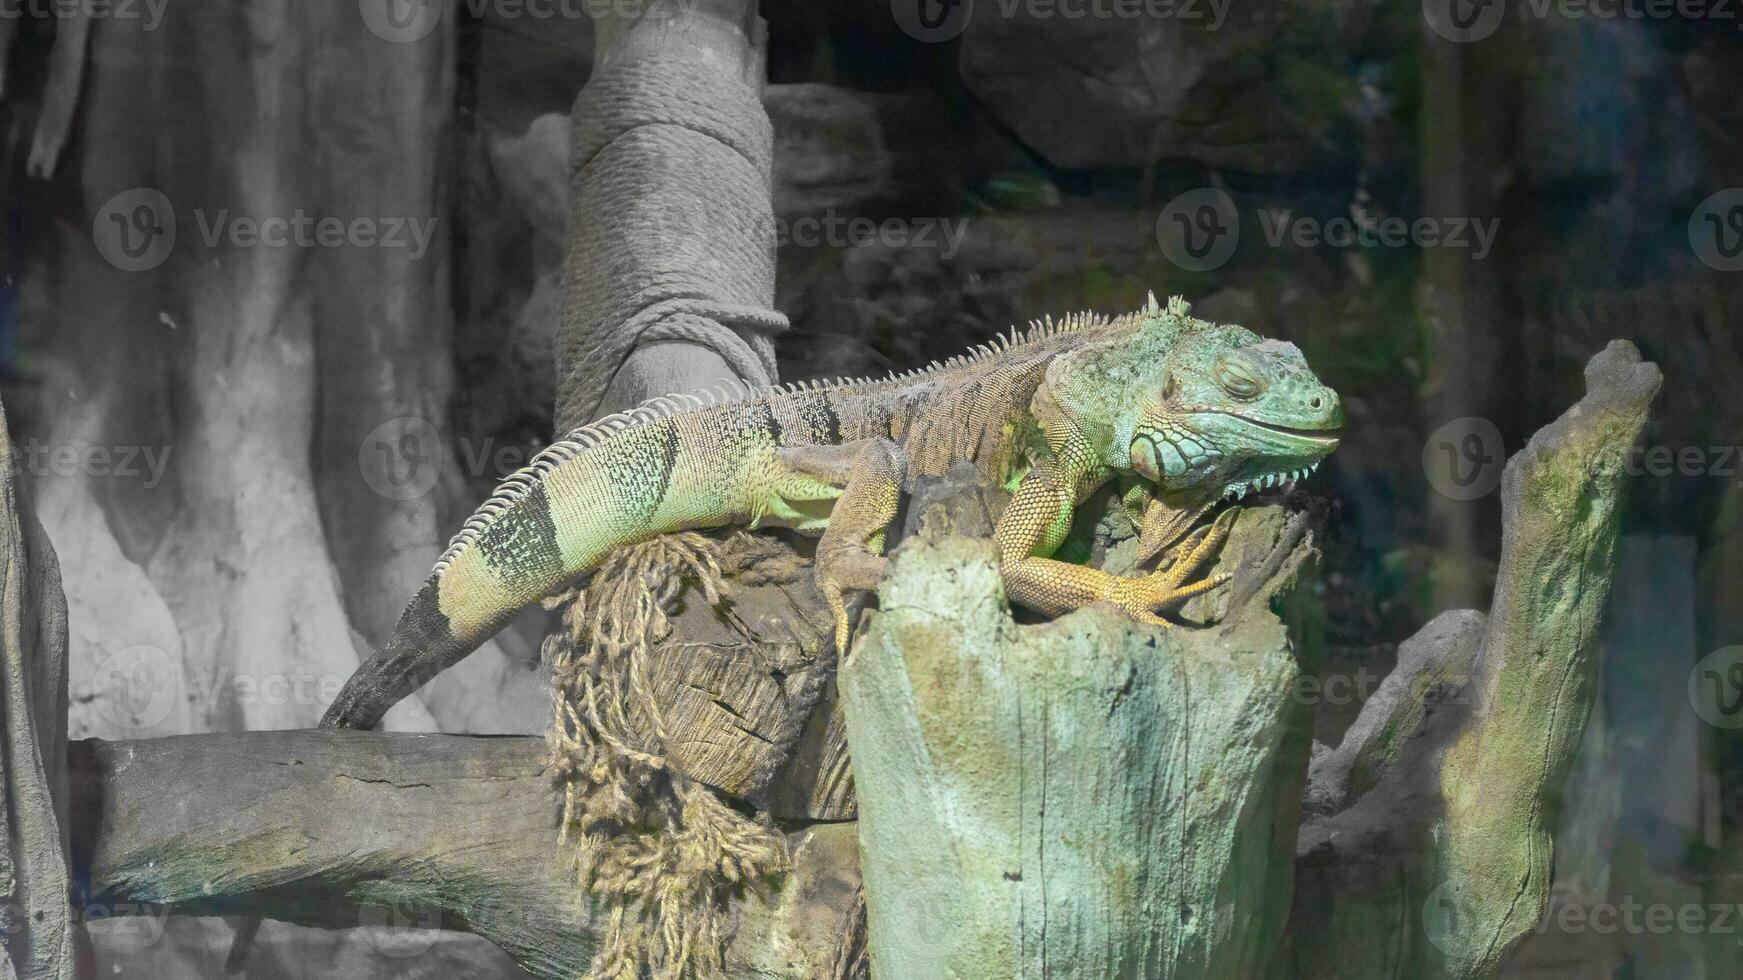 Common iguana close-up in the terrarium, reptile herbivorous lizard. photo